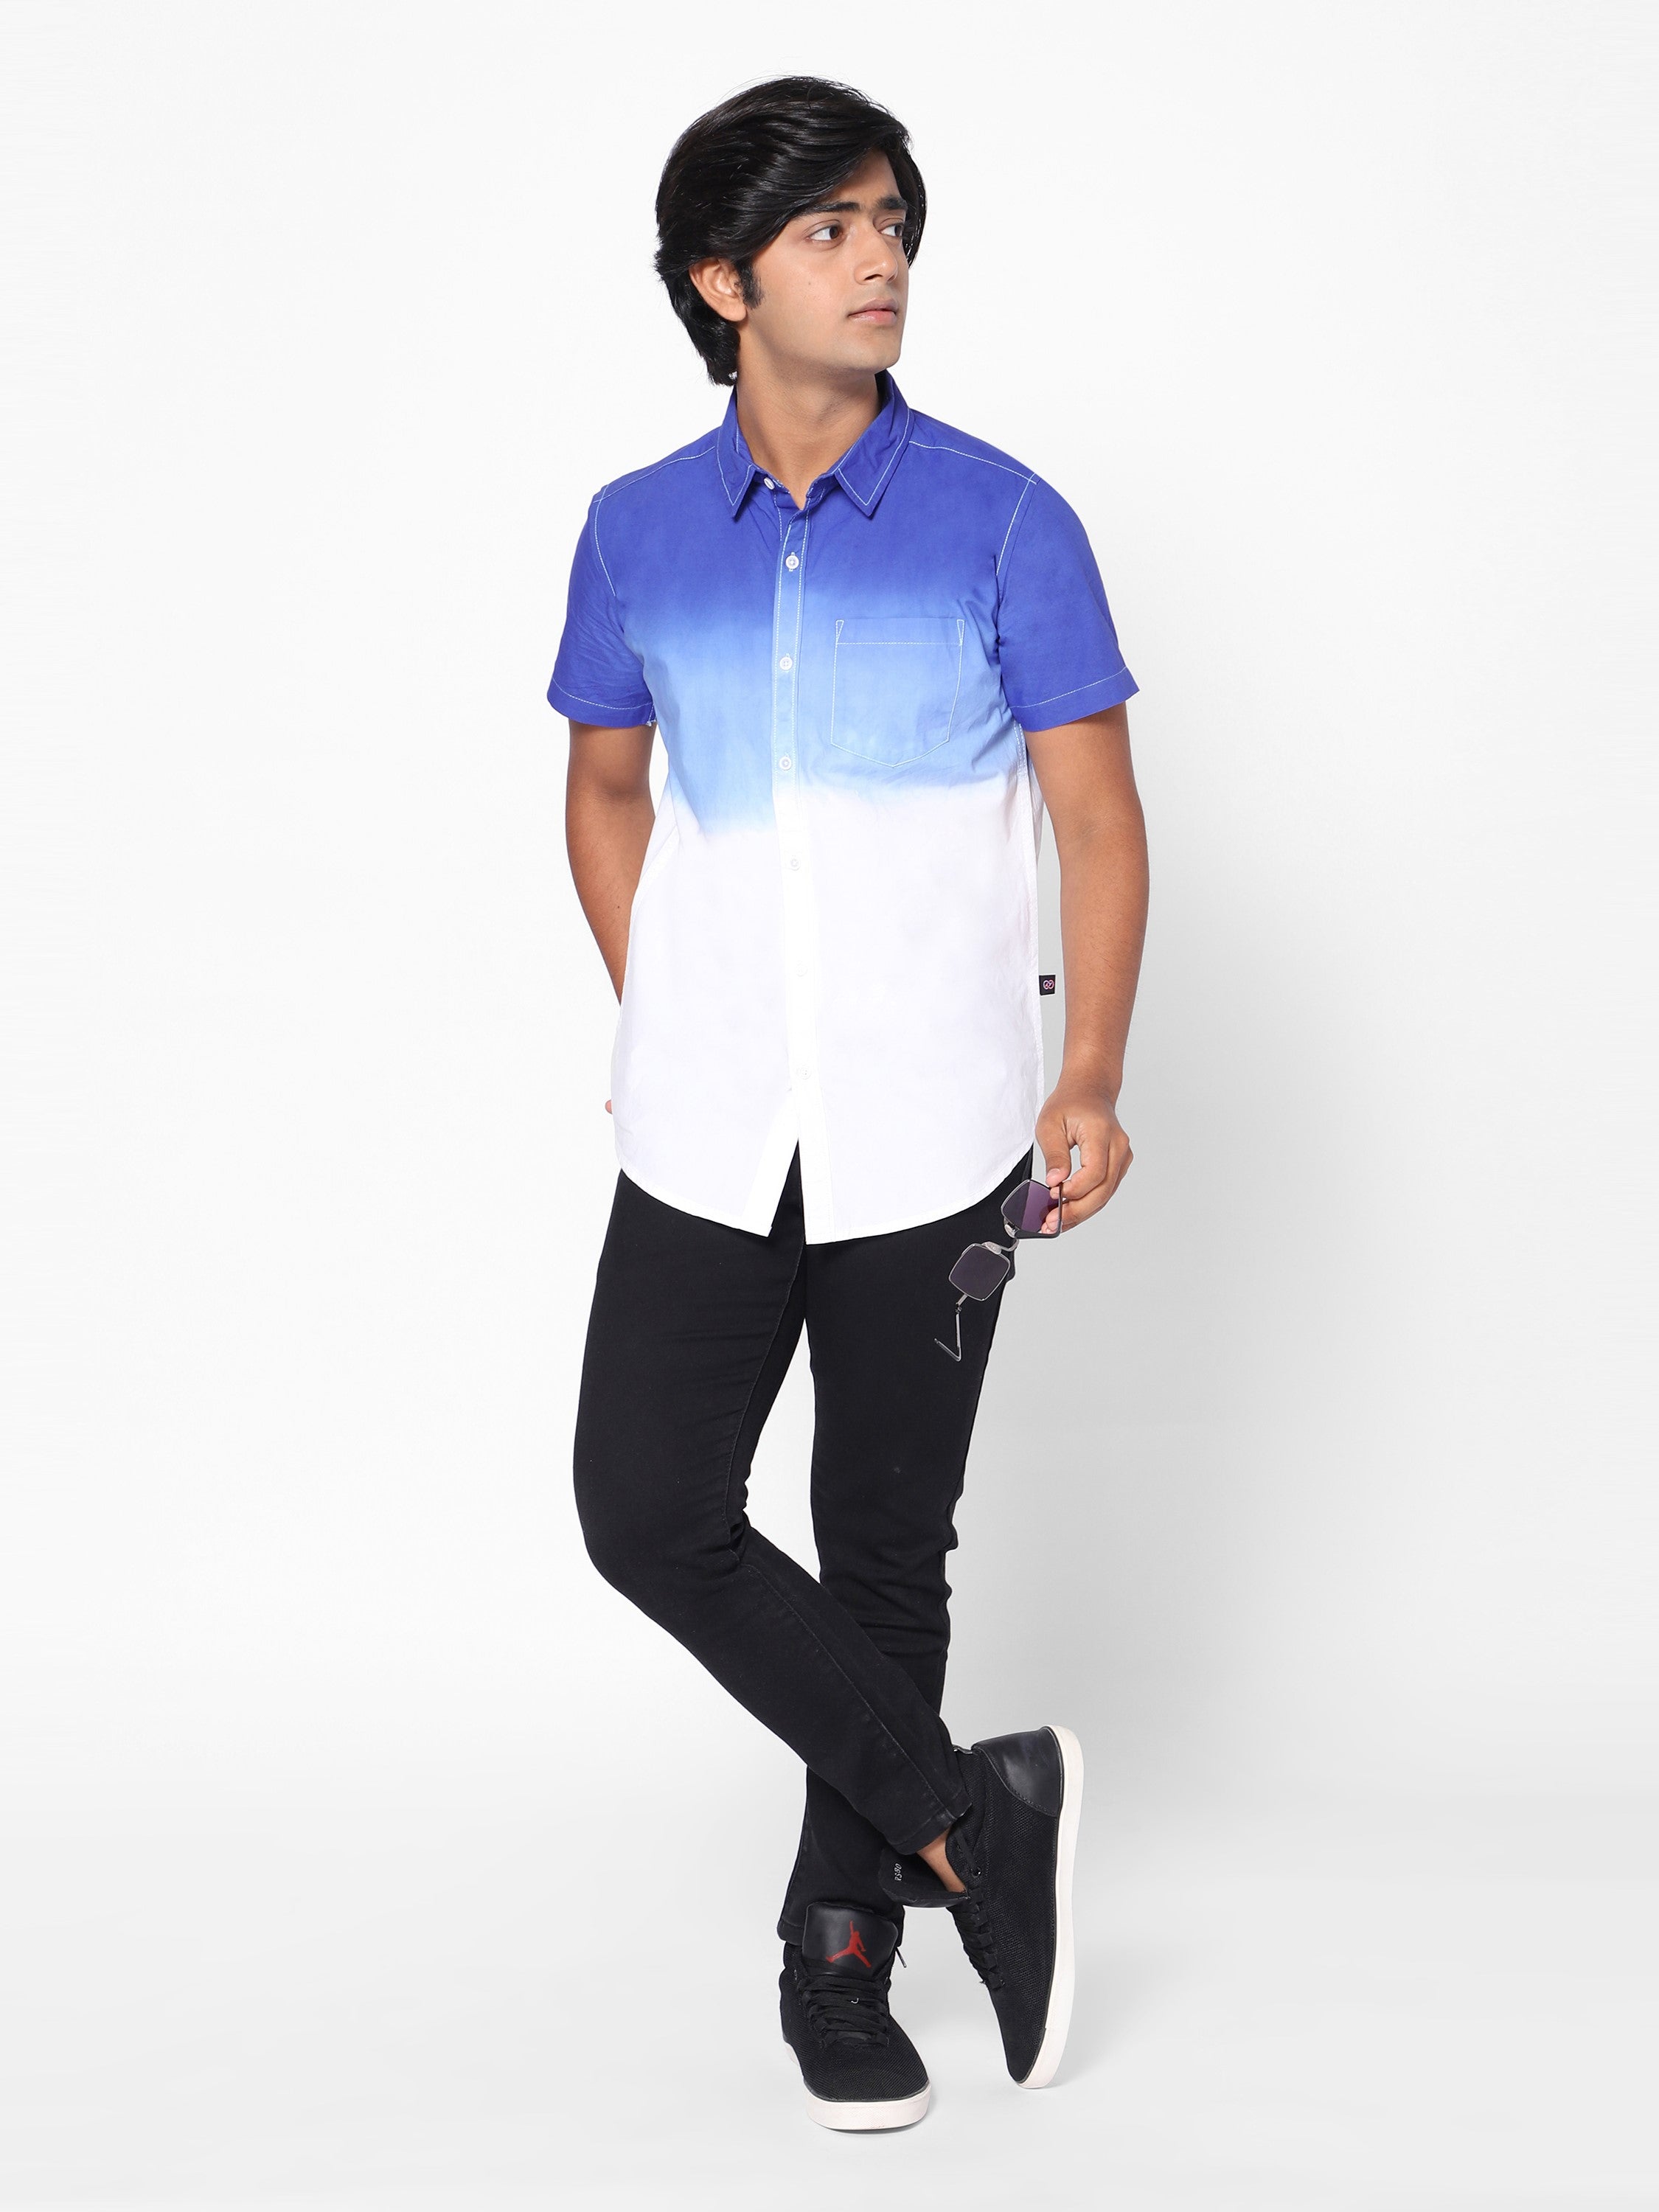 Boys Short Sleeve Tie & dye Shirt Navy/Blue/White